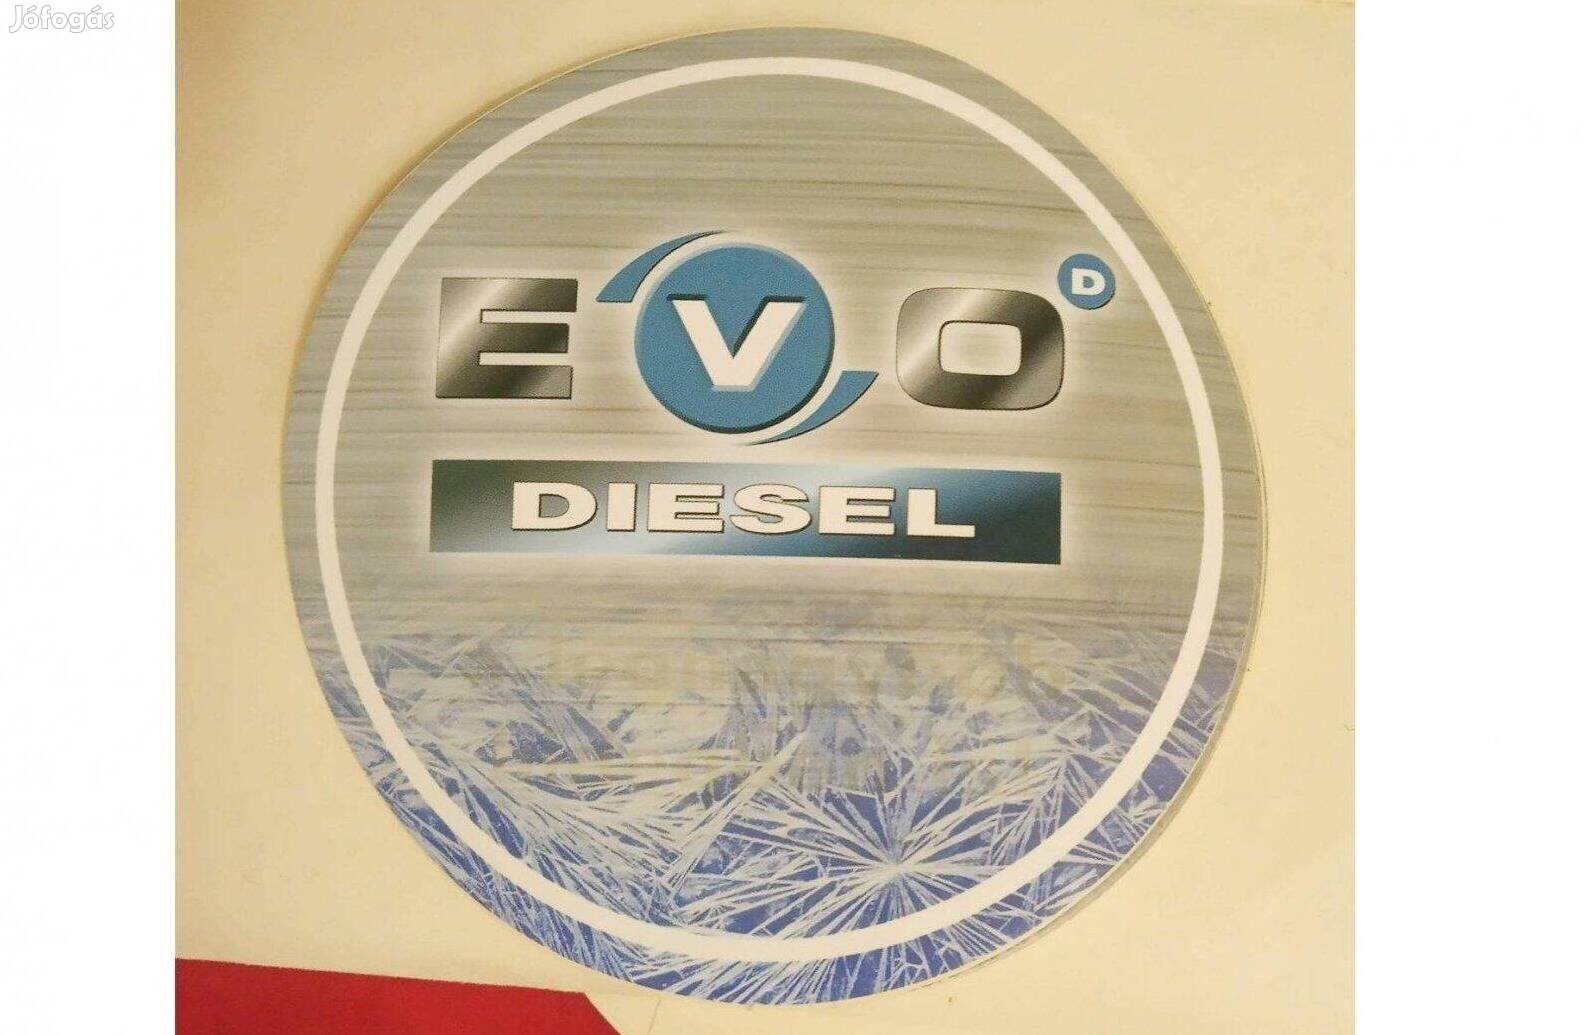 MOL Evo Diesel hőre változó matrica A hidegben jelenik meg felirat